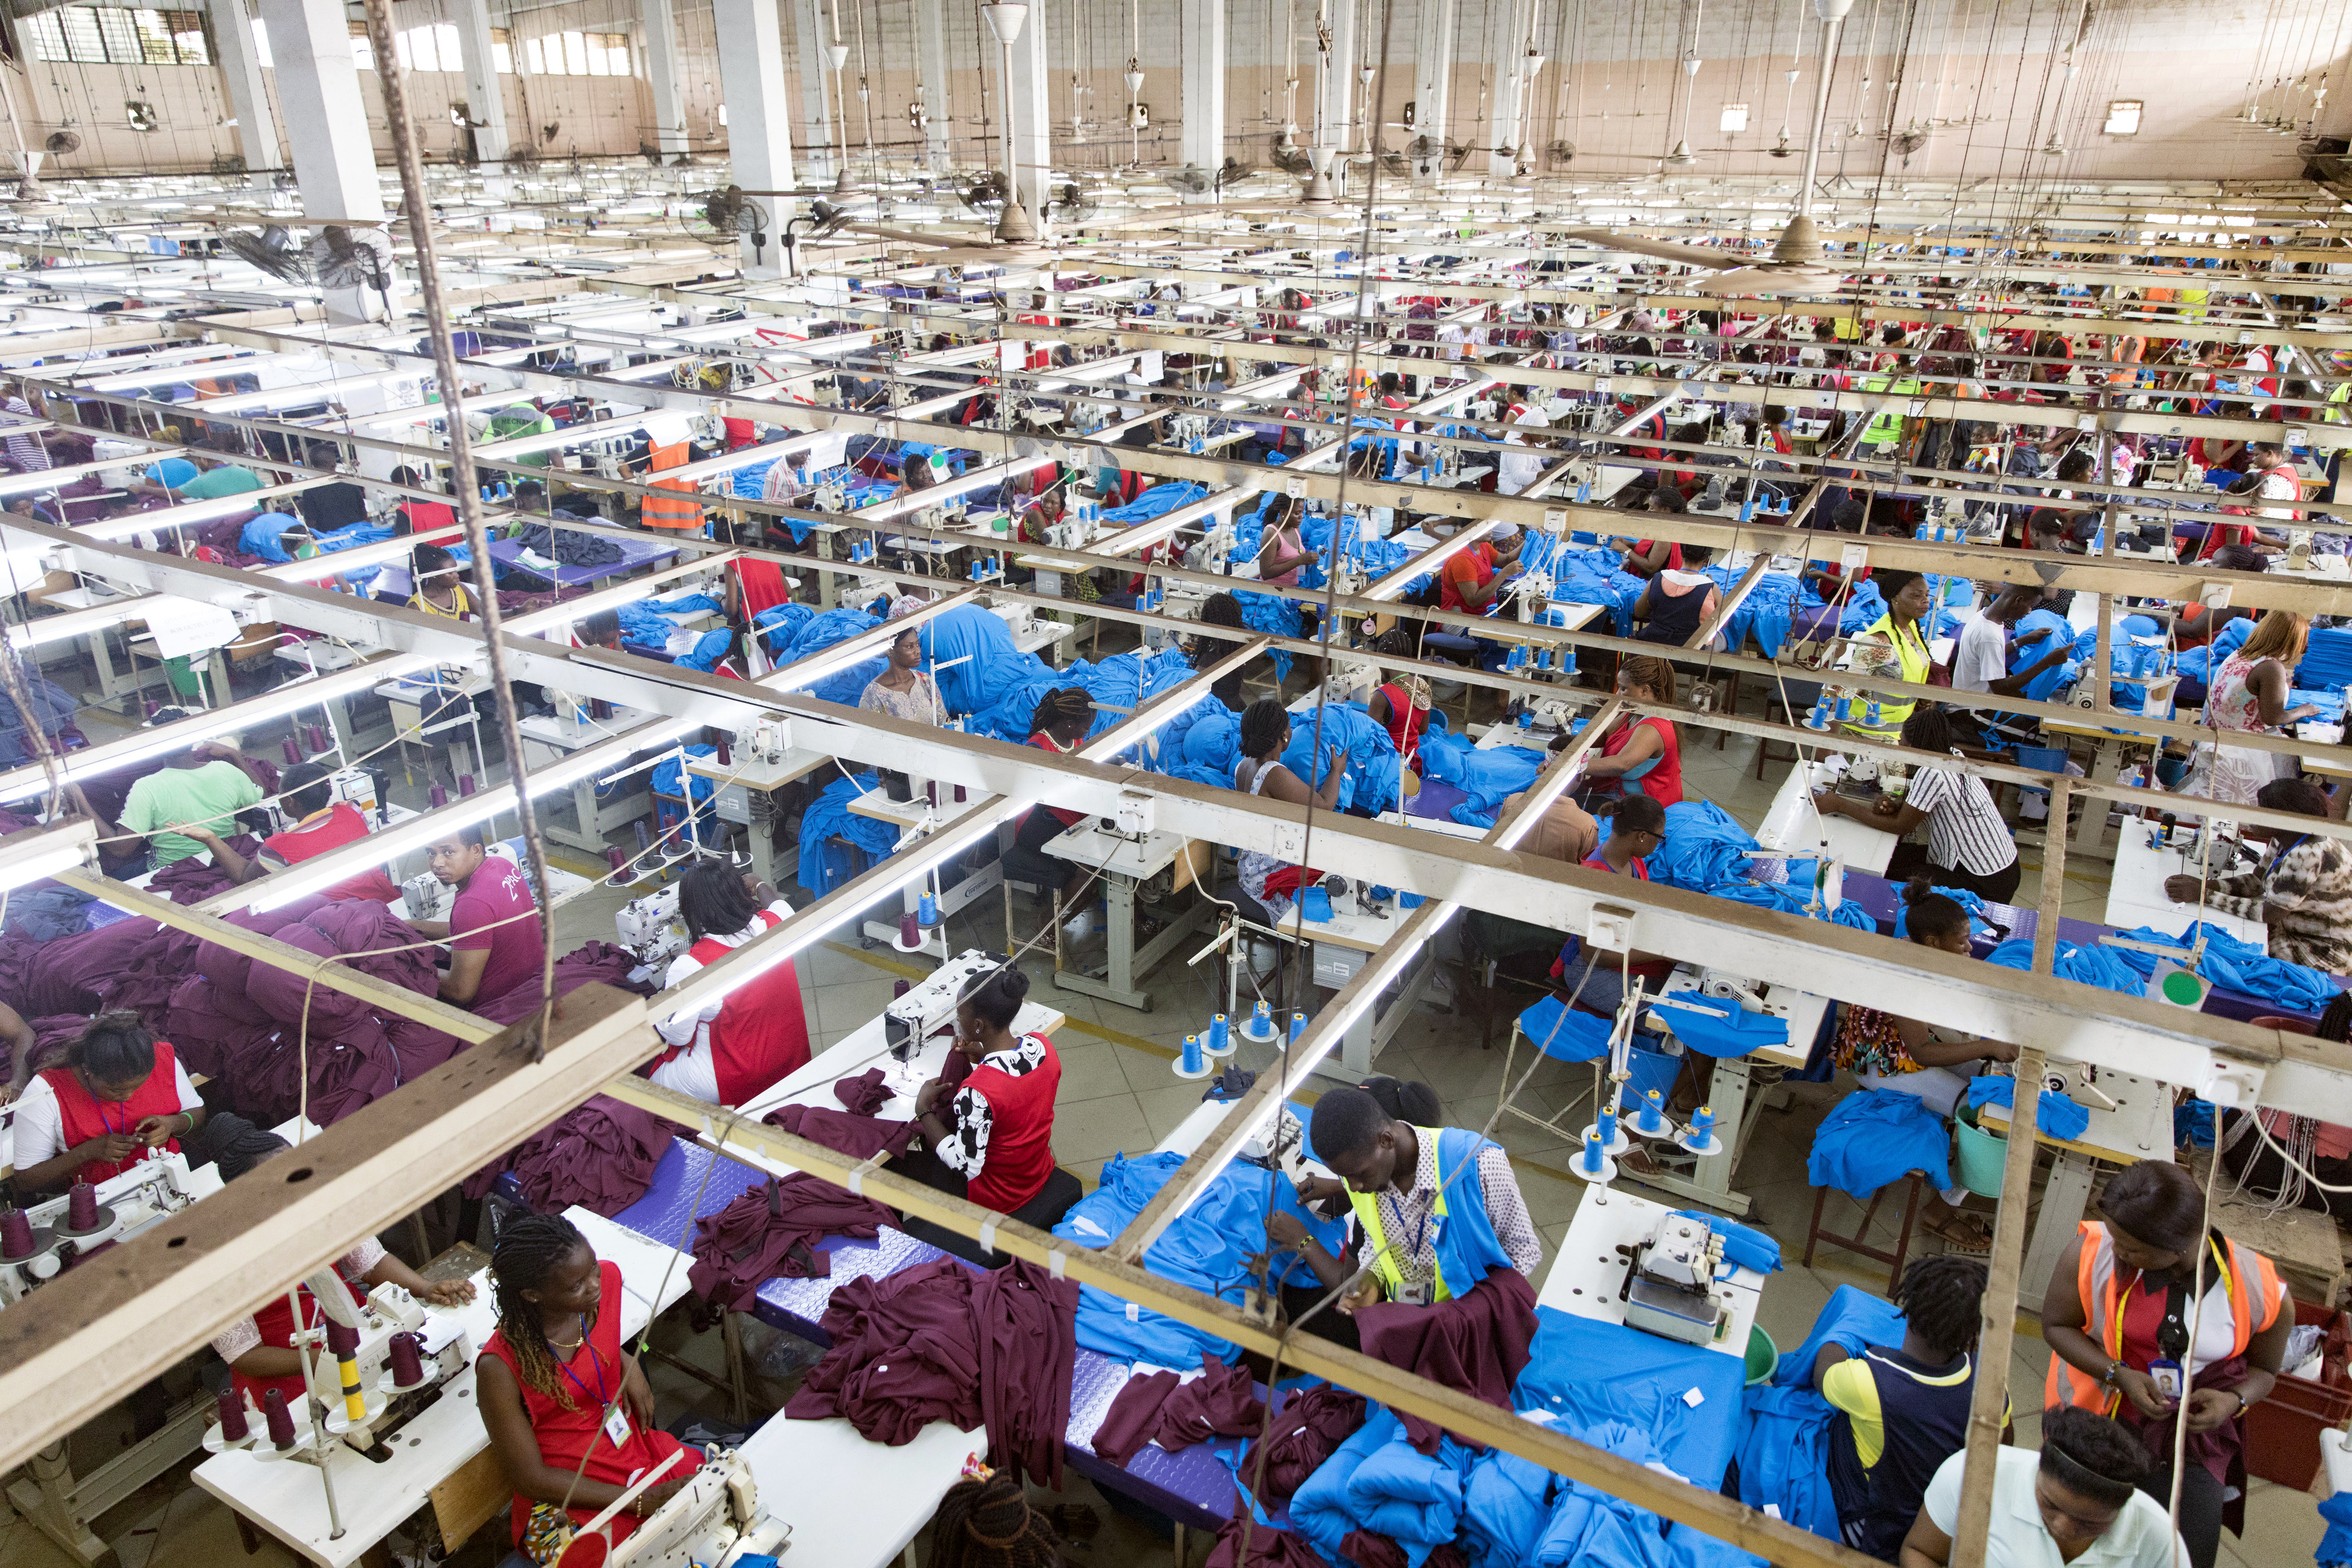 Die Textilfabrik Dignity DTRT Apparel, die Arbeitsplätze mit fairen Arbeitsbedingungen und angemessener Bezahlung im aufstrebenden Textilsektor in Ghana schafft (DTRT steht für "do the right thing")